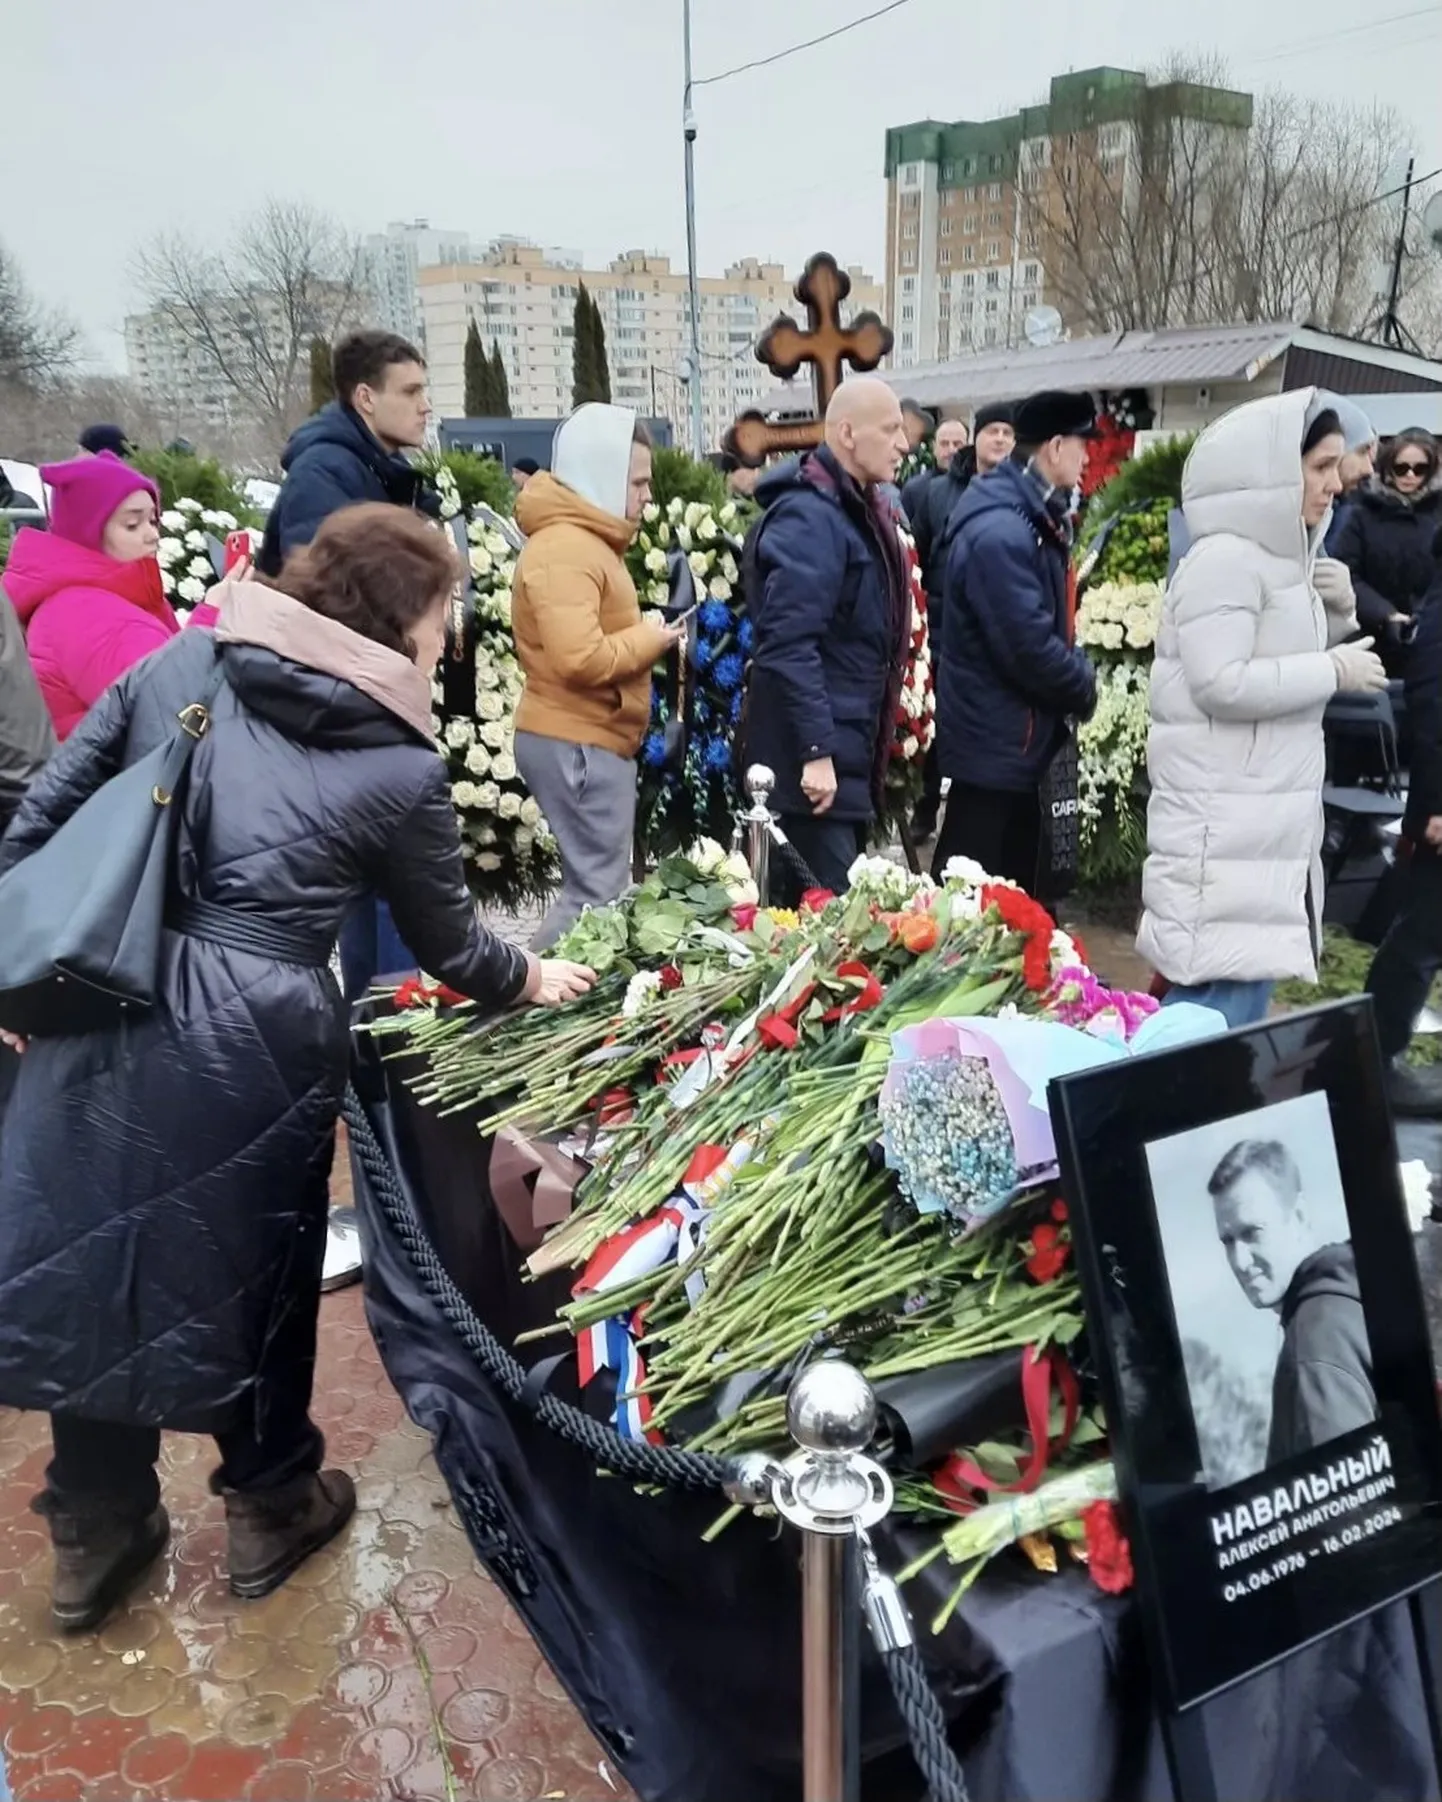 Eestit esindas Navalnõi matusetalitusel ajutine asjur Venemaal Jana Vanamölder.